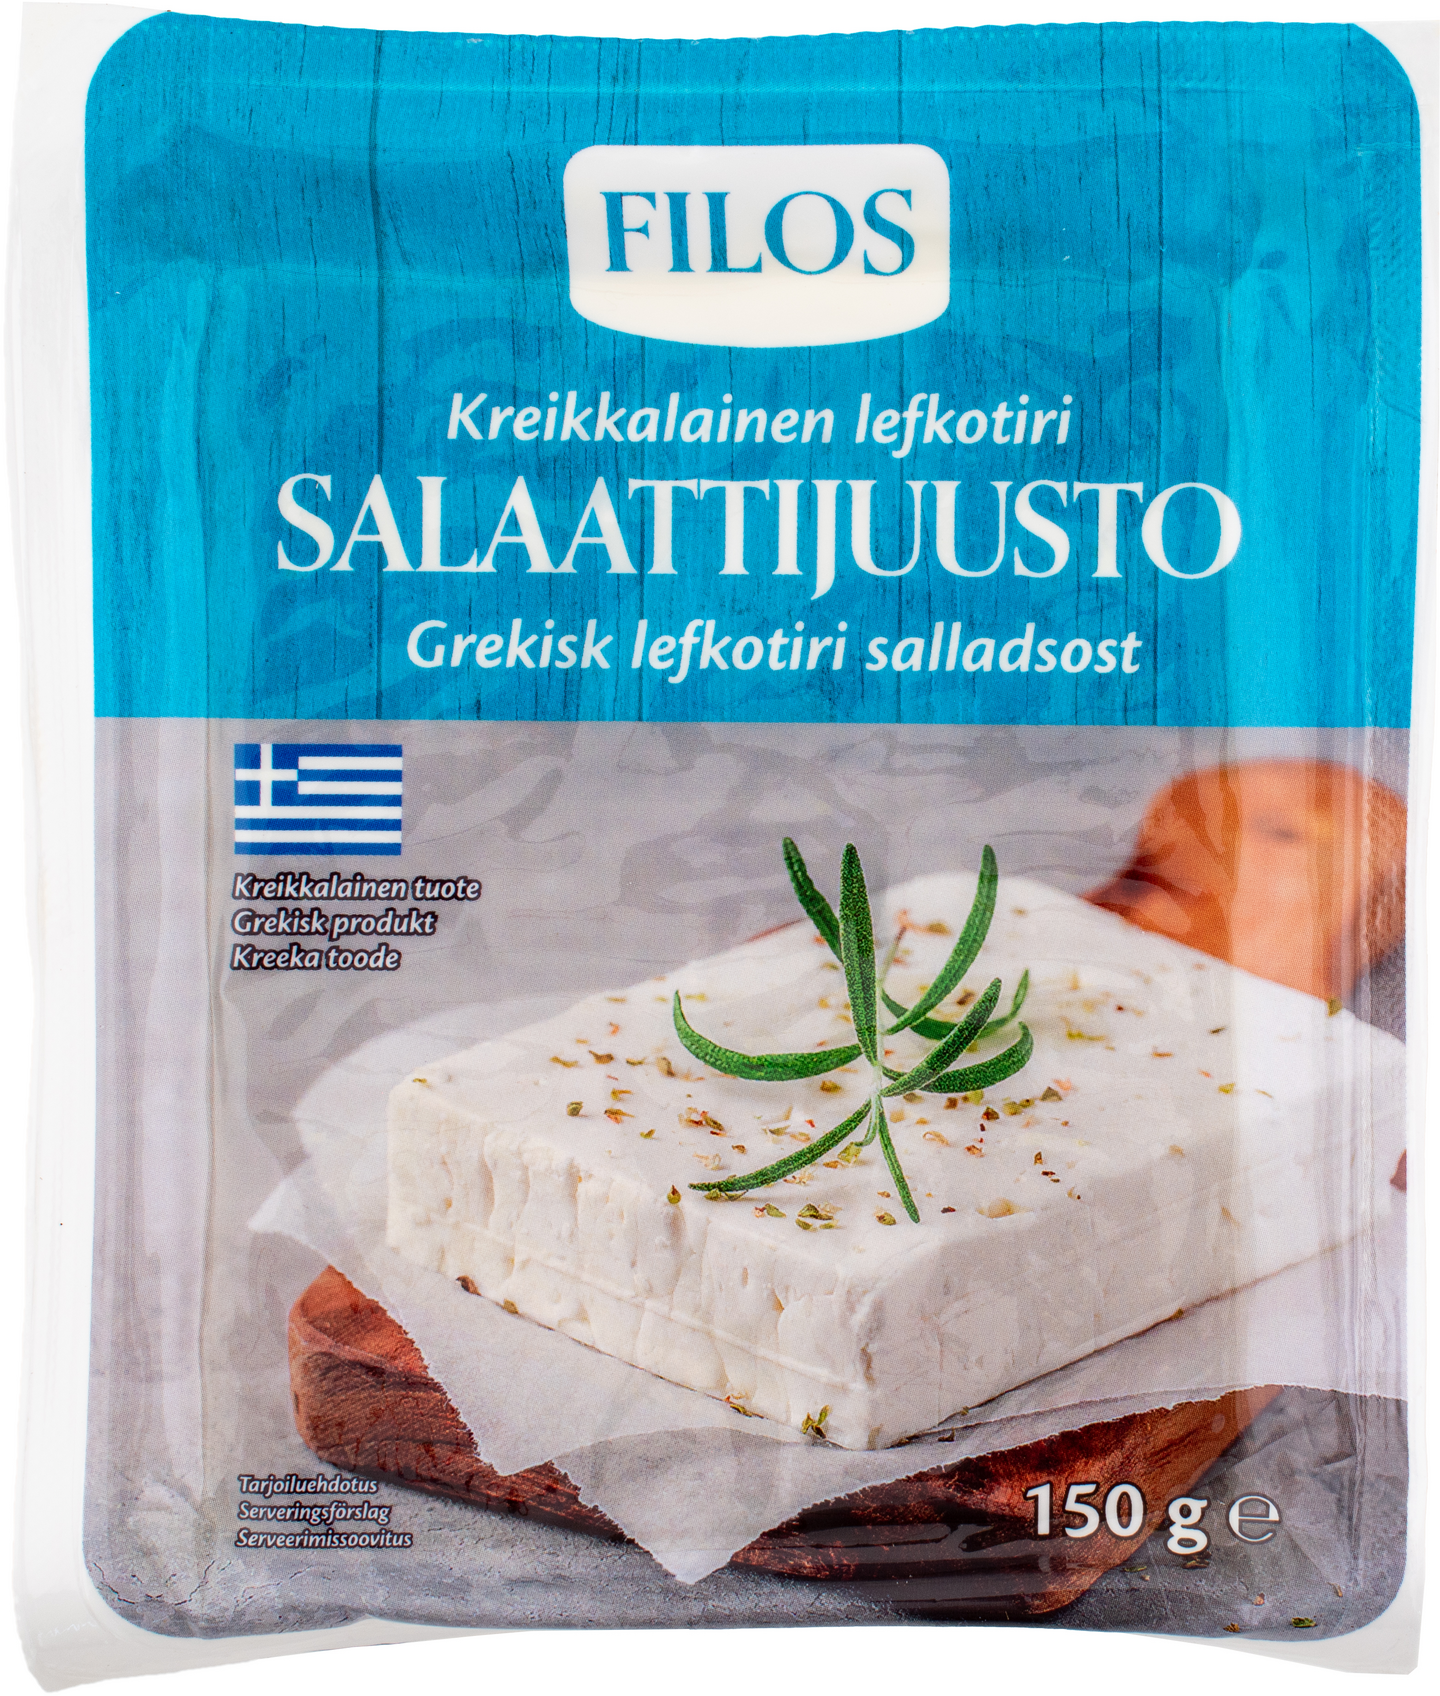 Filos Kreikkalainen salaattijuusto 150g